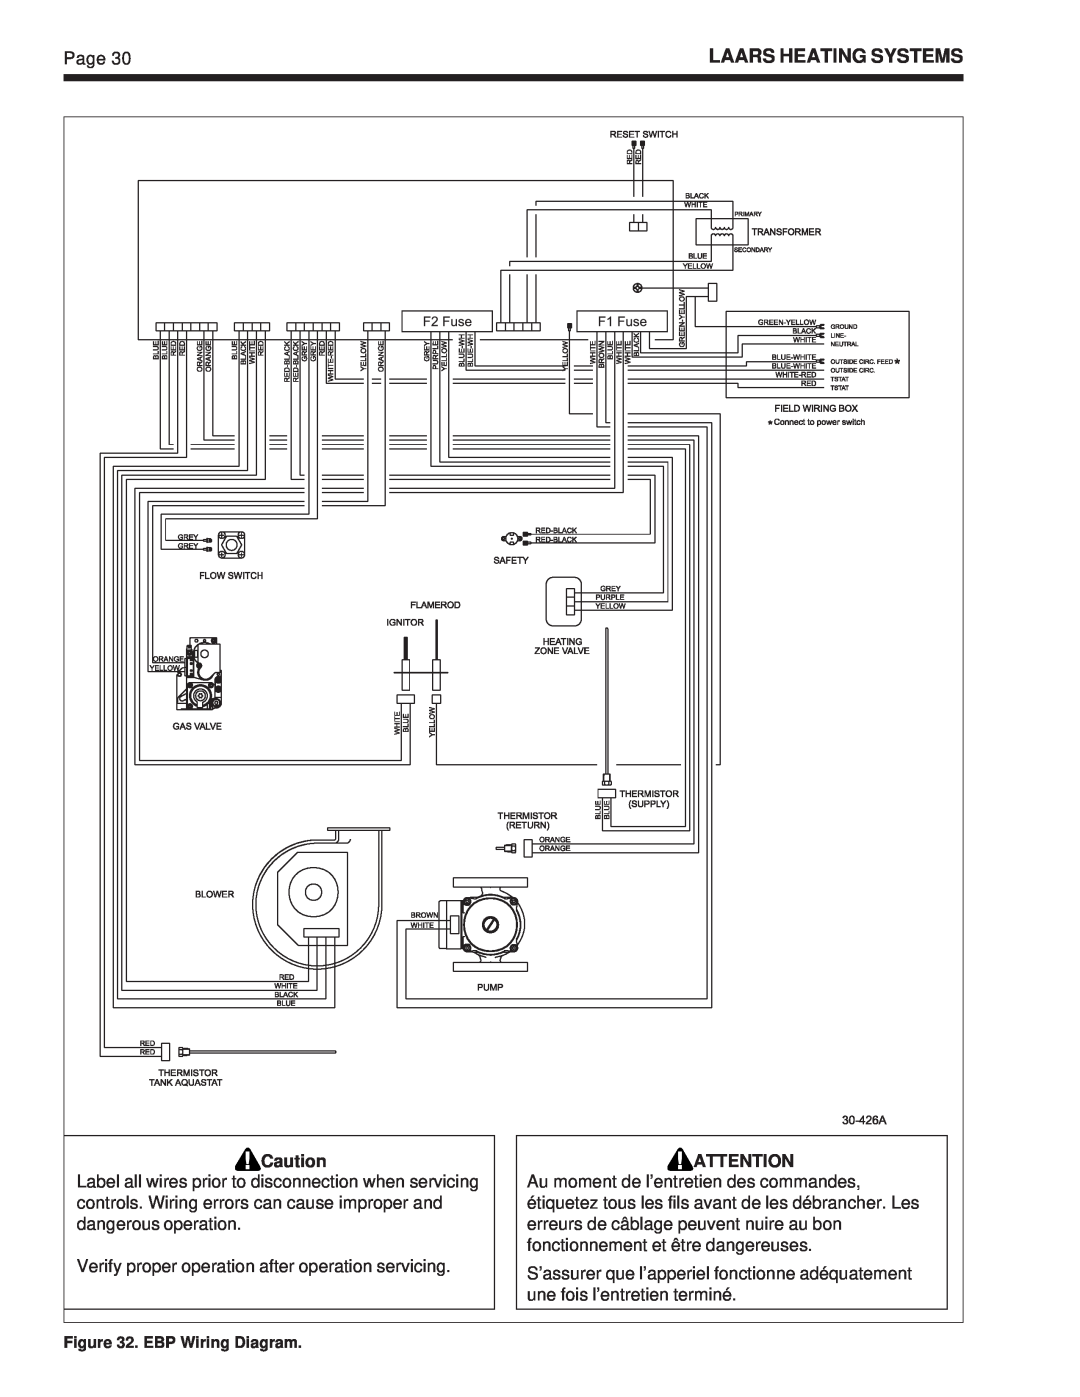 Whirlpool EDP/EDN warranty Laars Heating Systems, EBP Wiring Diagram 